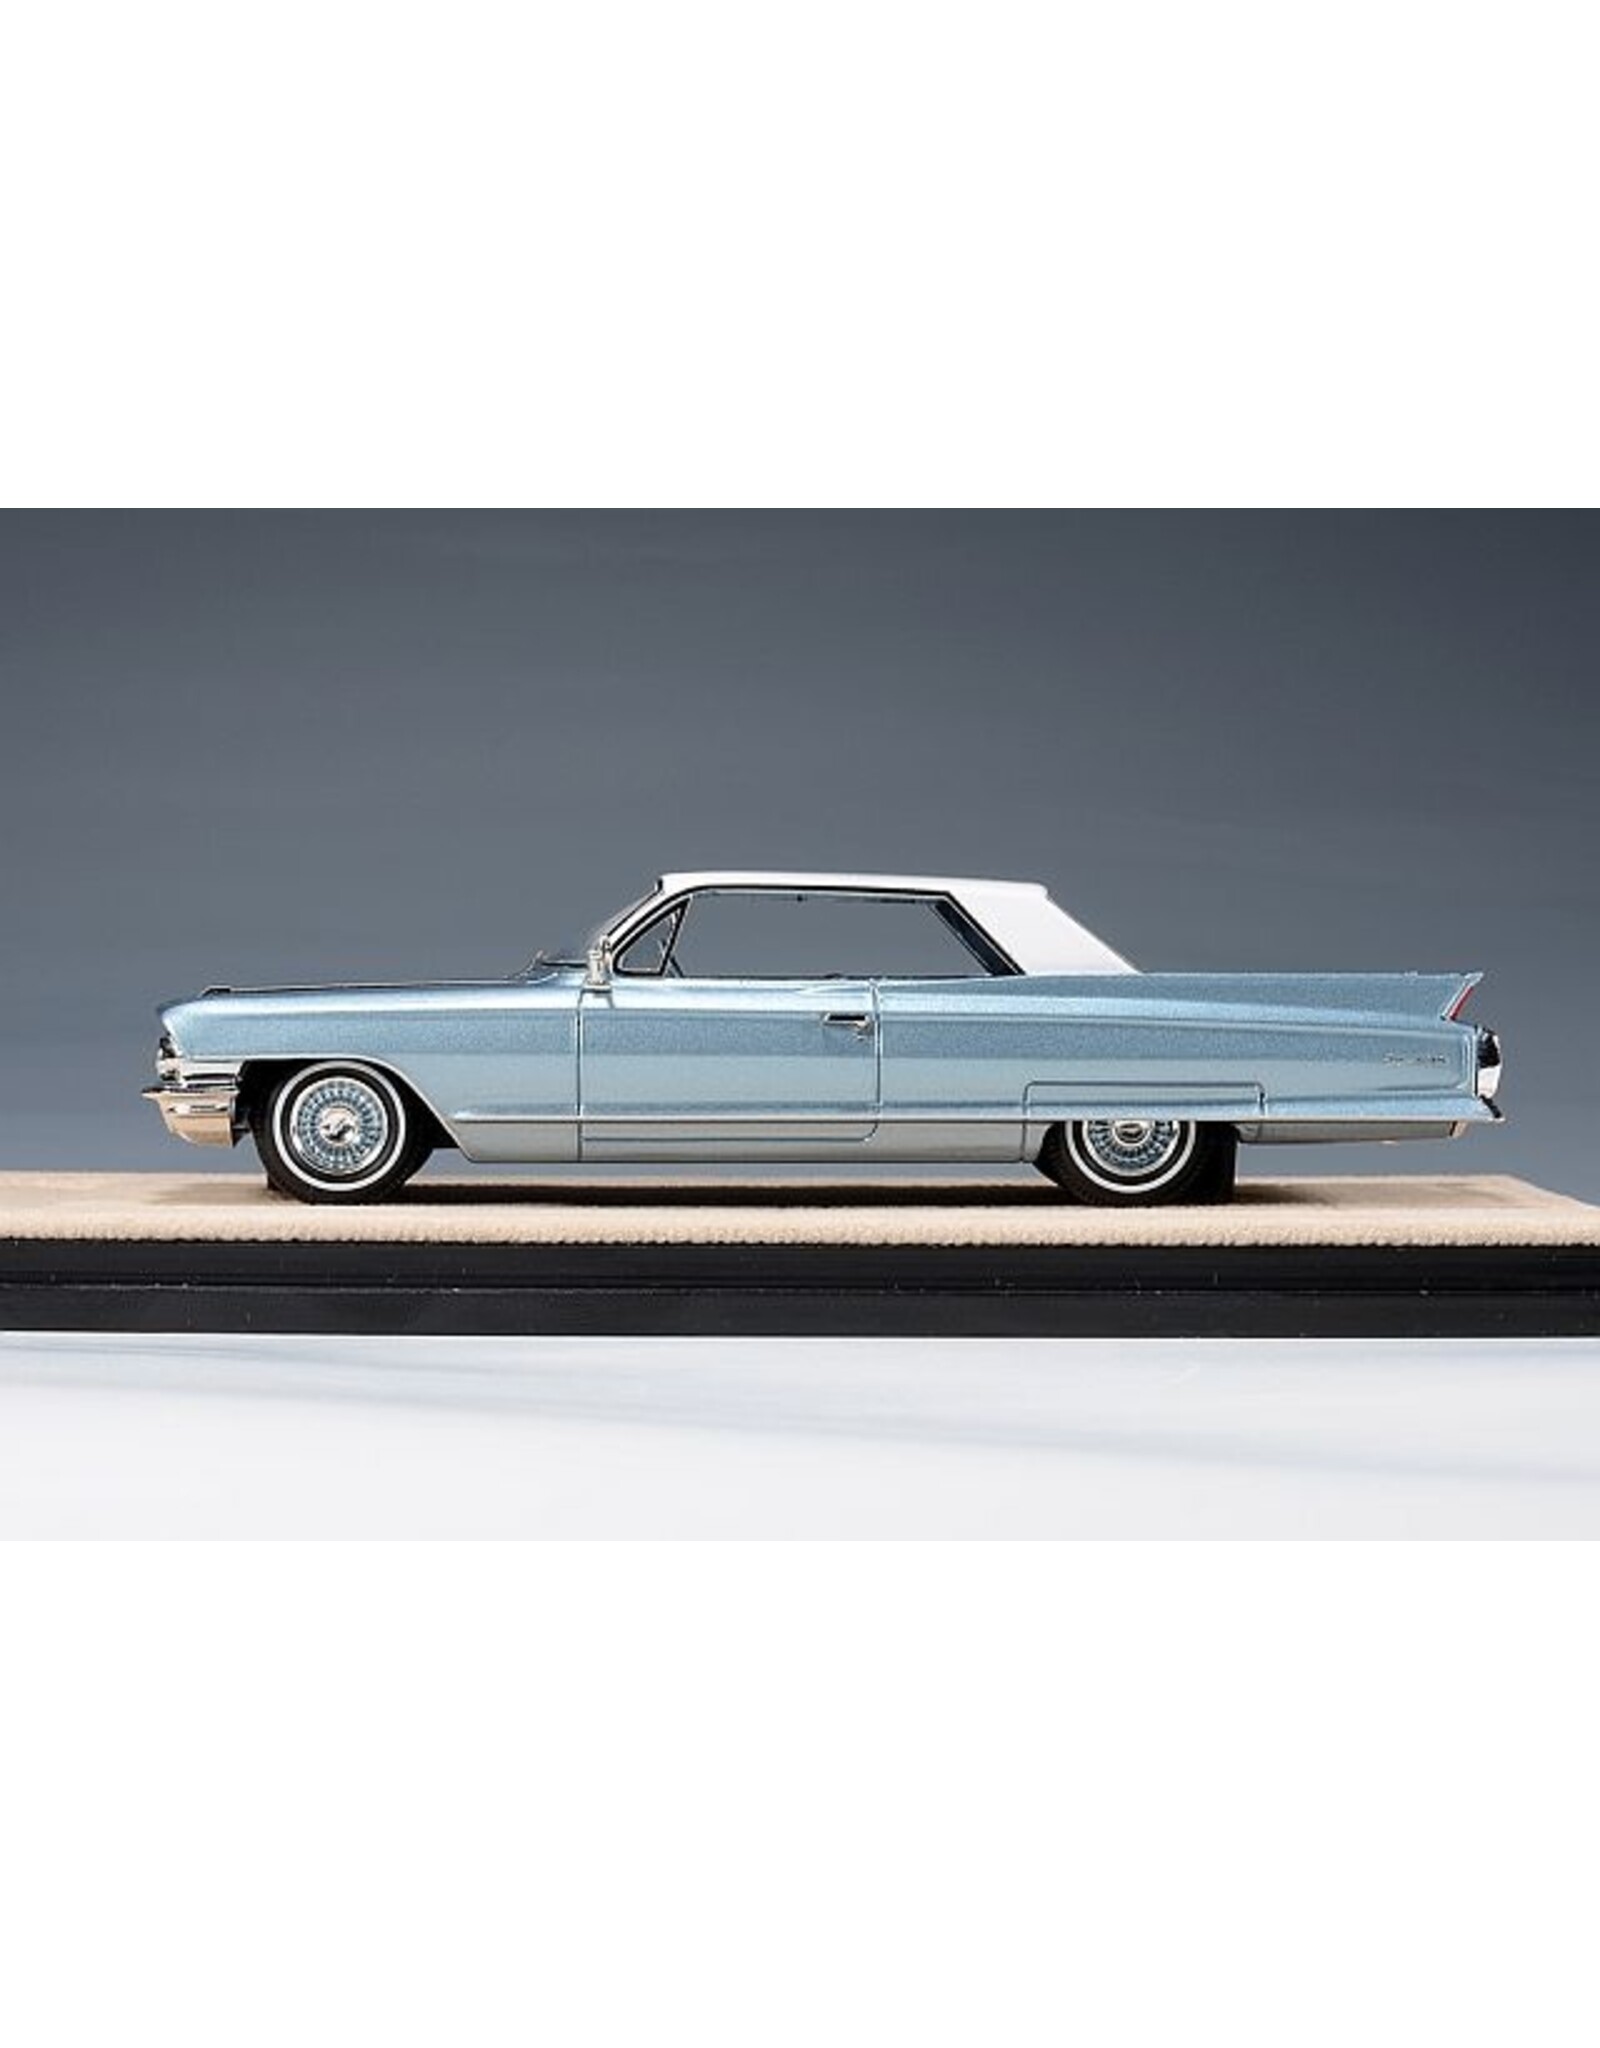 Cadillac(General Motors) Cadillac Coupe de Ville(1962)Newport blue metallic